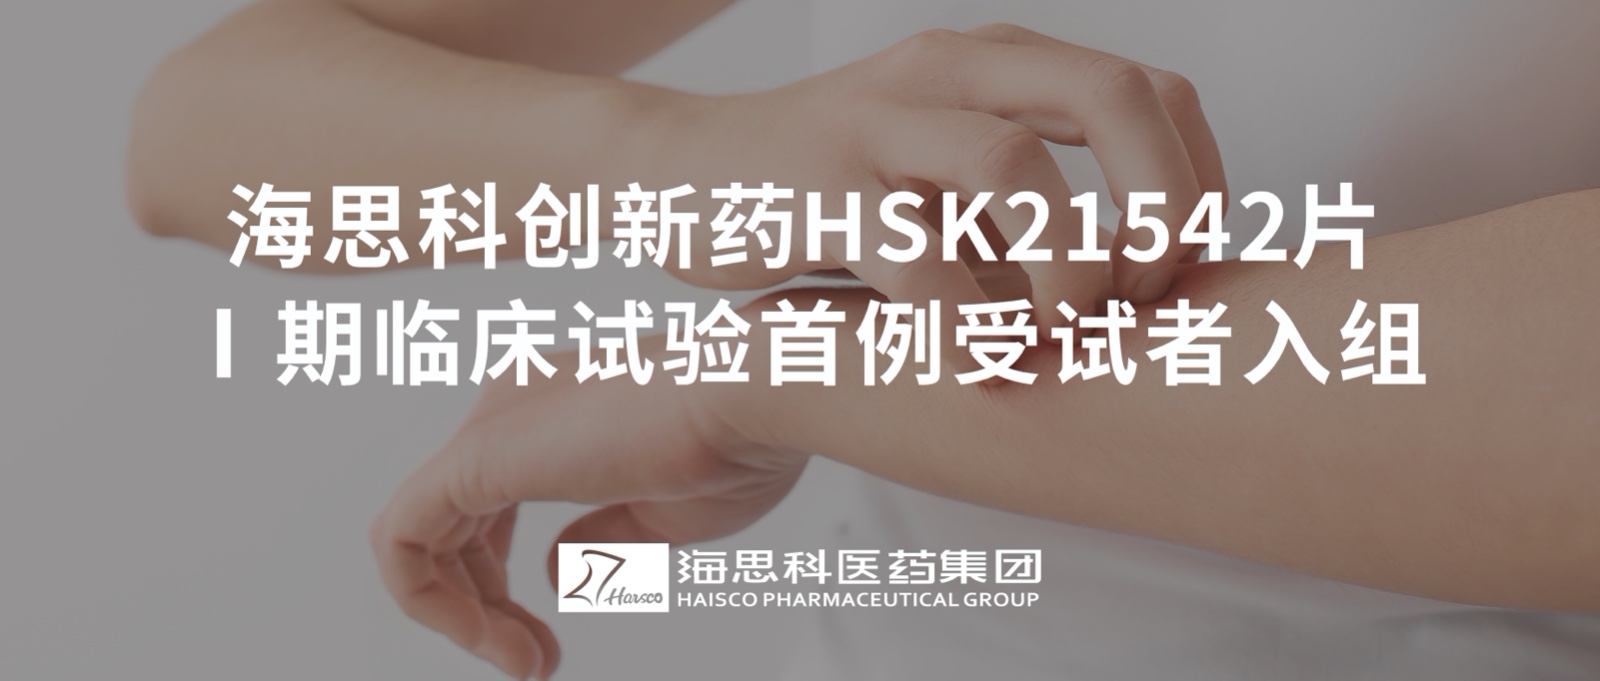 海思科创新药HSK21542片Ⅰ期临床试验首例受试者入组